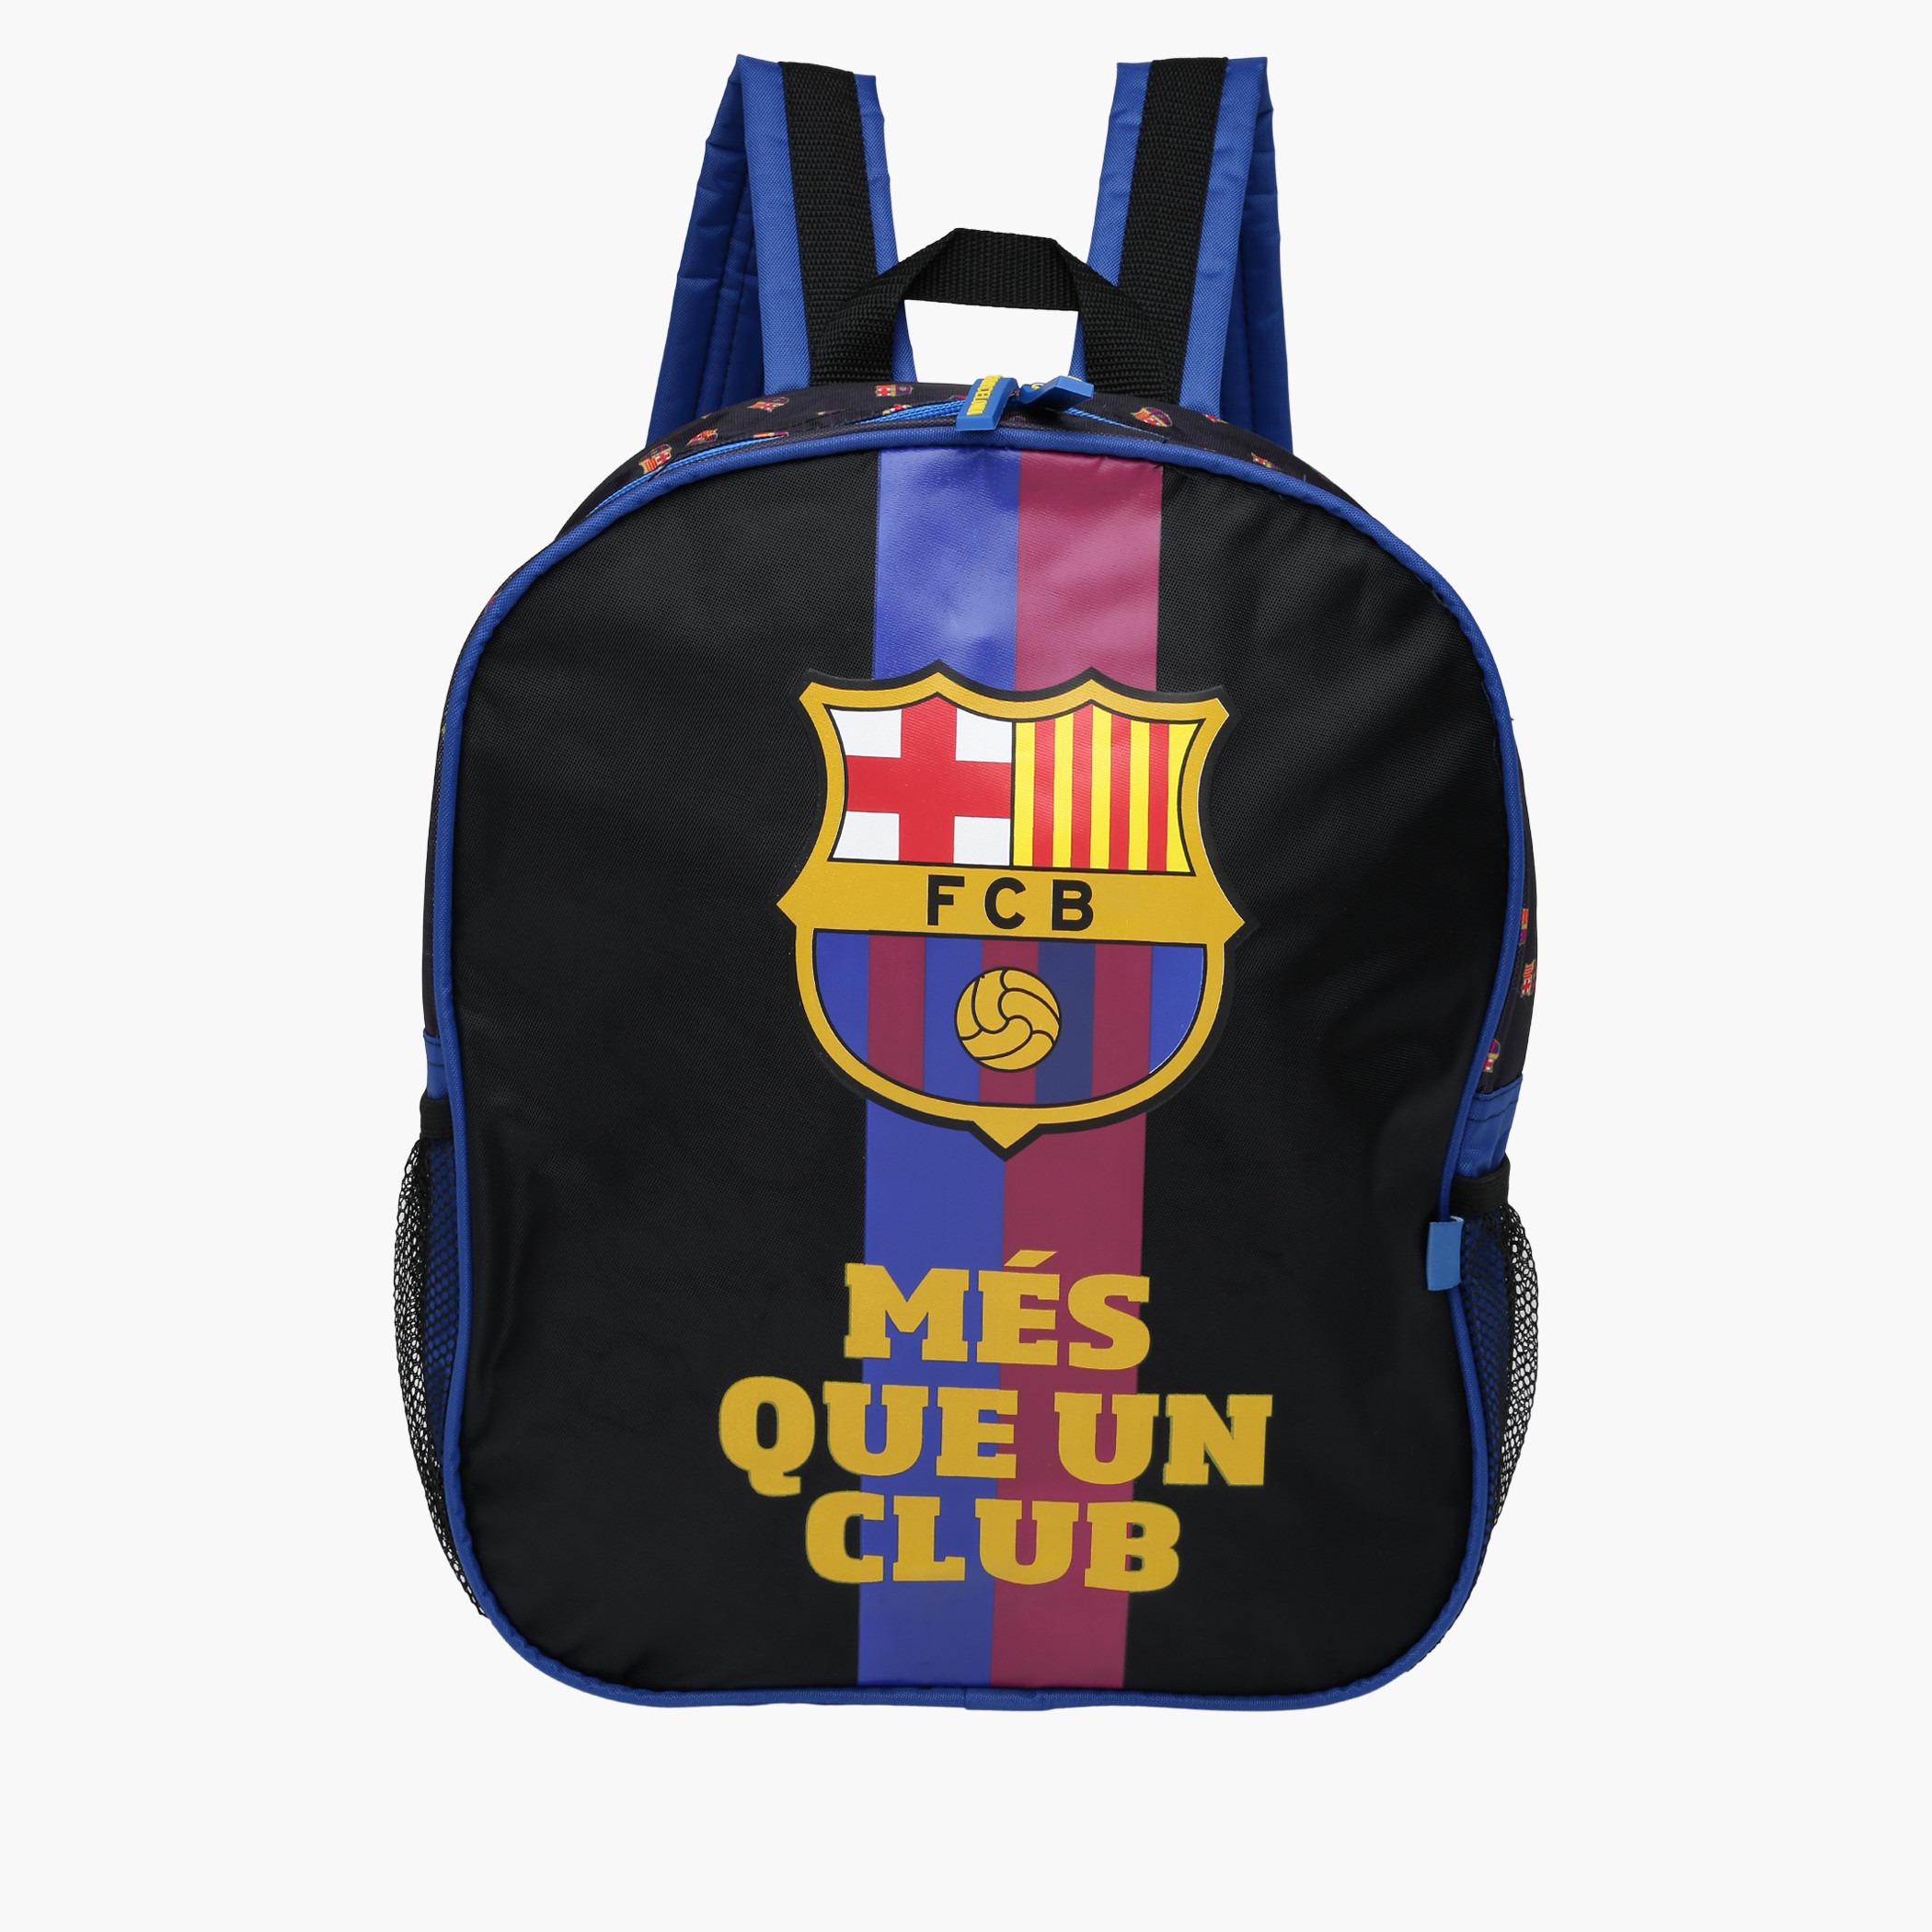 Barcelona Backpack for FCB Boys and Girl Barca Fans Digital Printed Bag